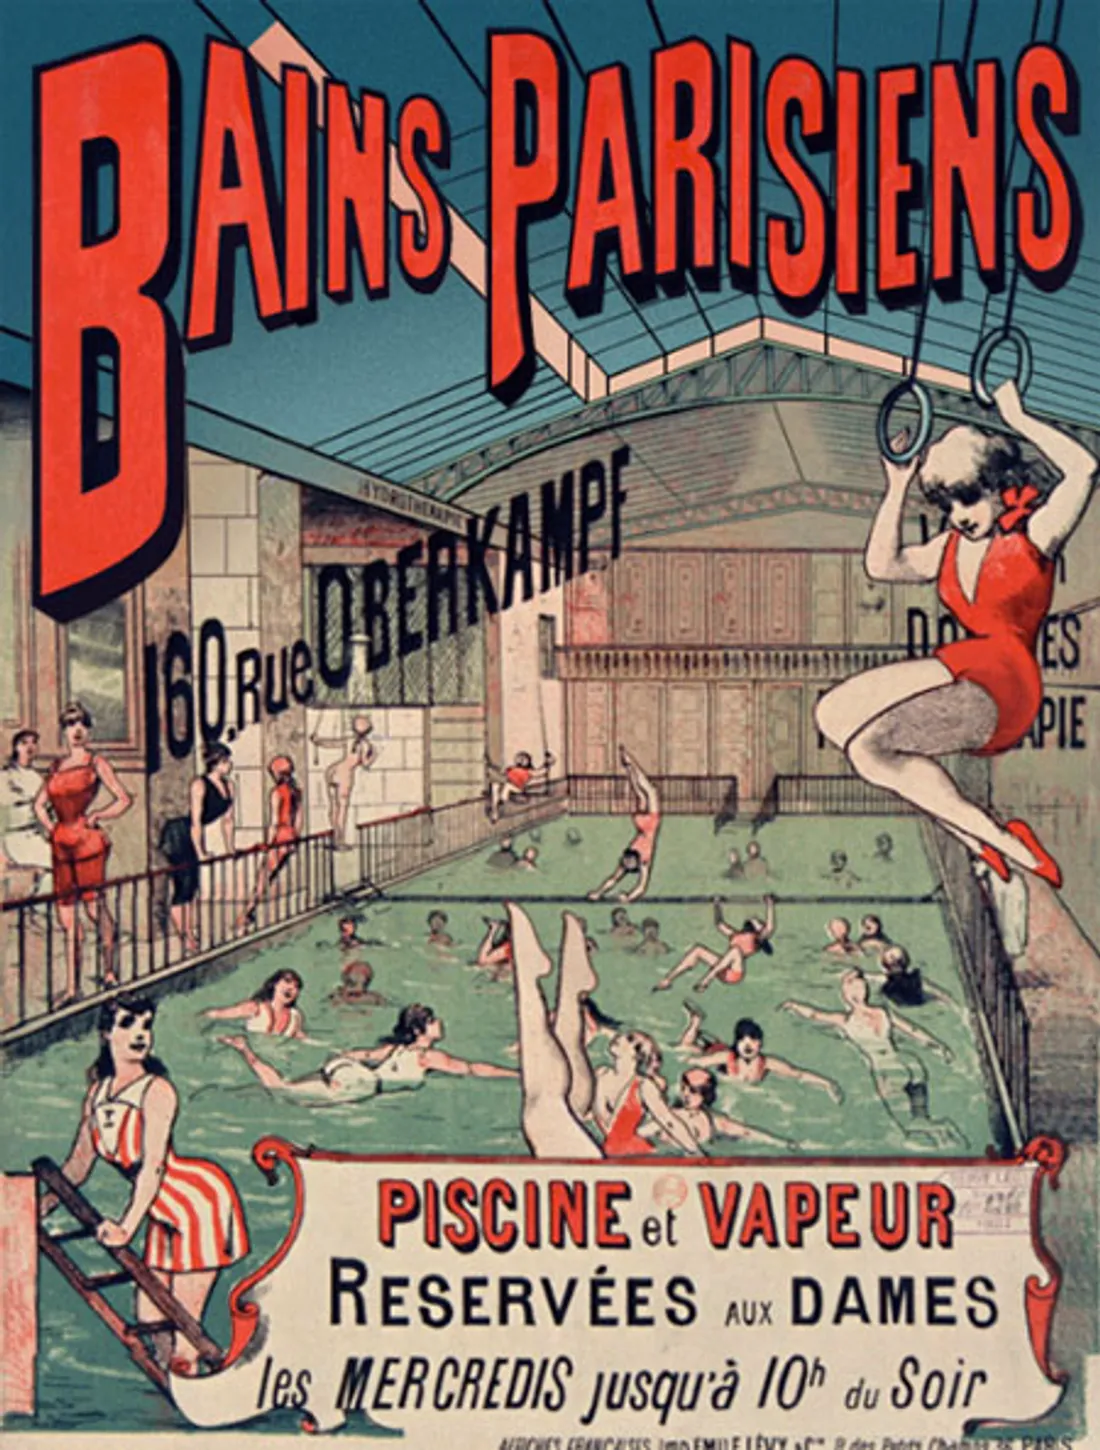 Une affiche publicitaire des Bains Parisiens au XIXe siècle.